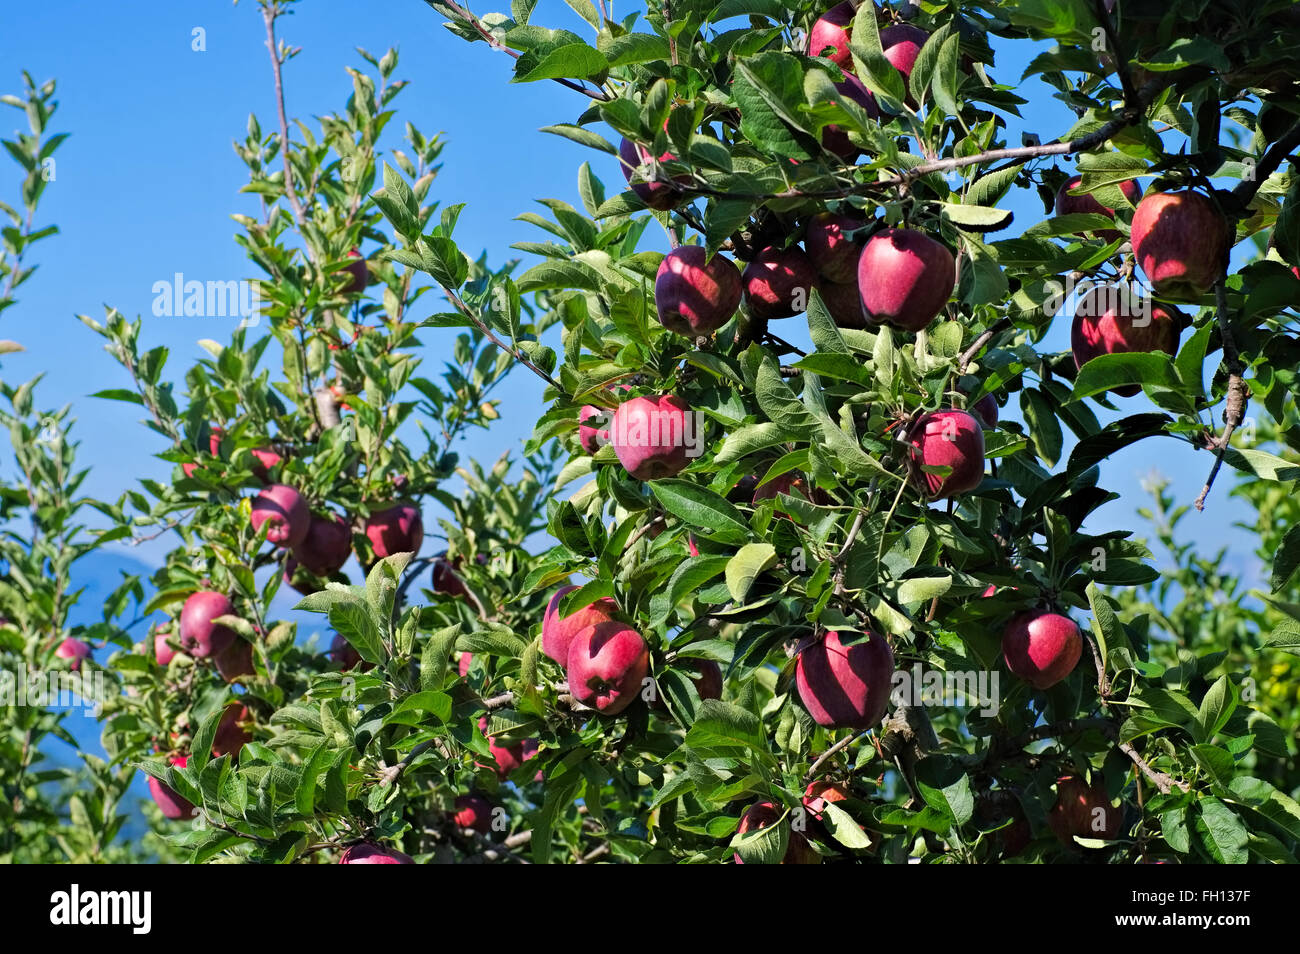 Rote Äpfel am Baum - Mele rosse su albero Foto Stock